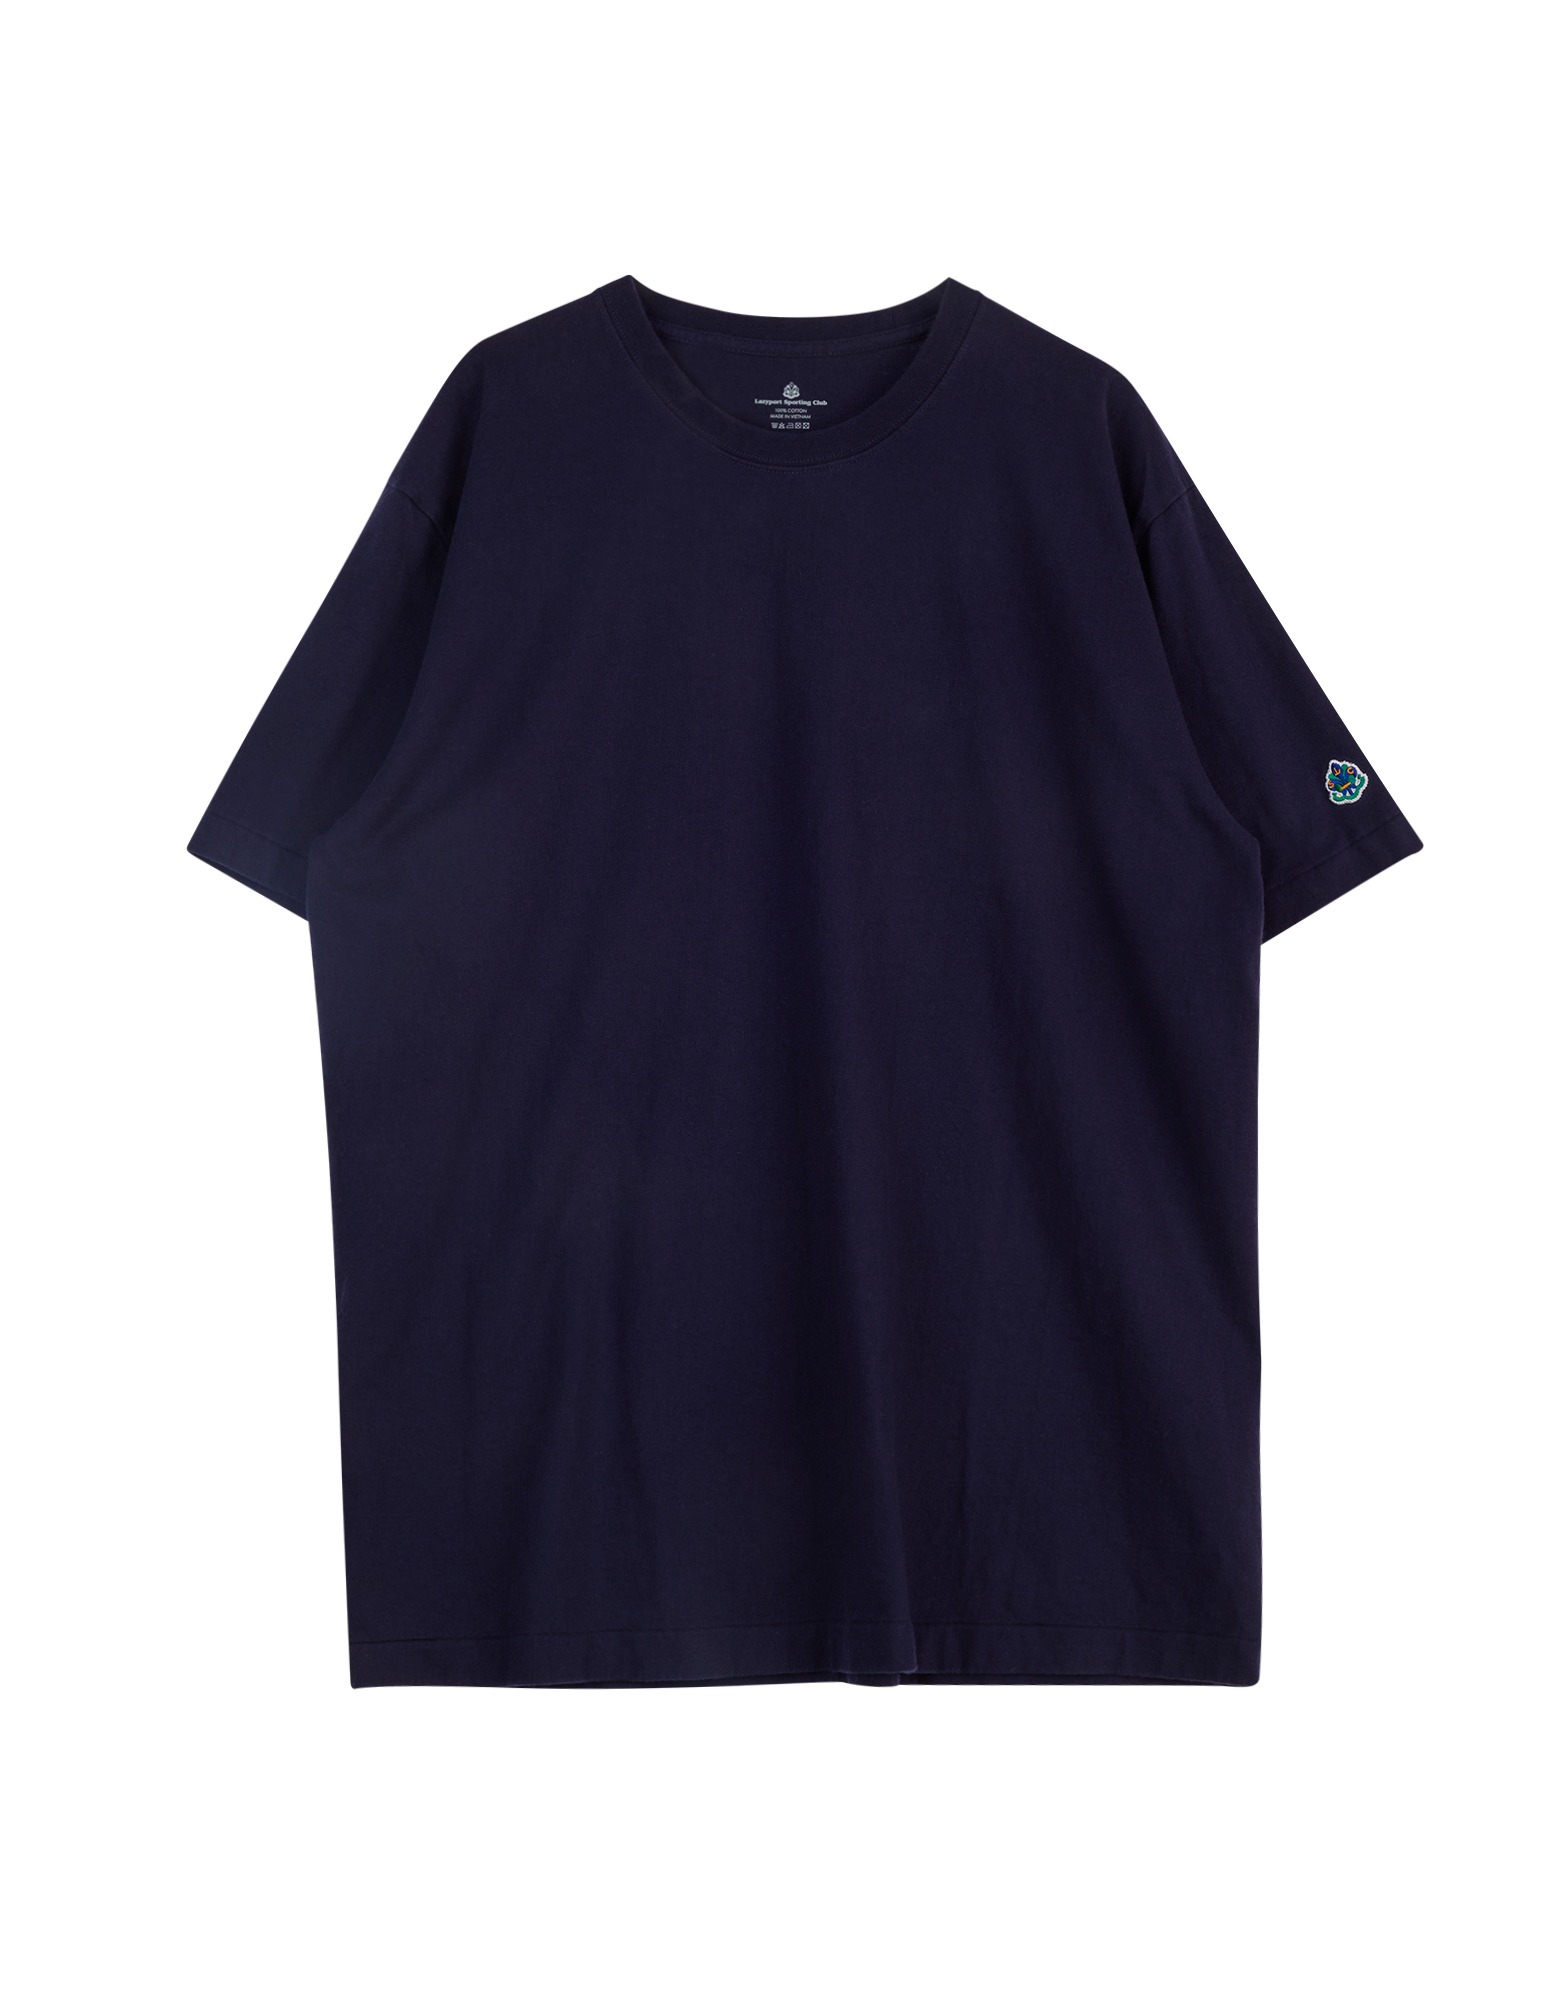 LSC Tubular T Shirt (Navy)